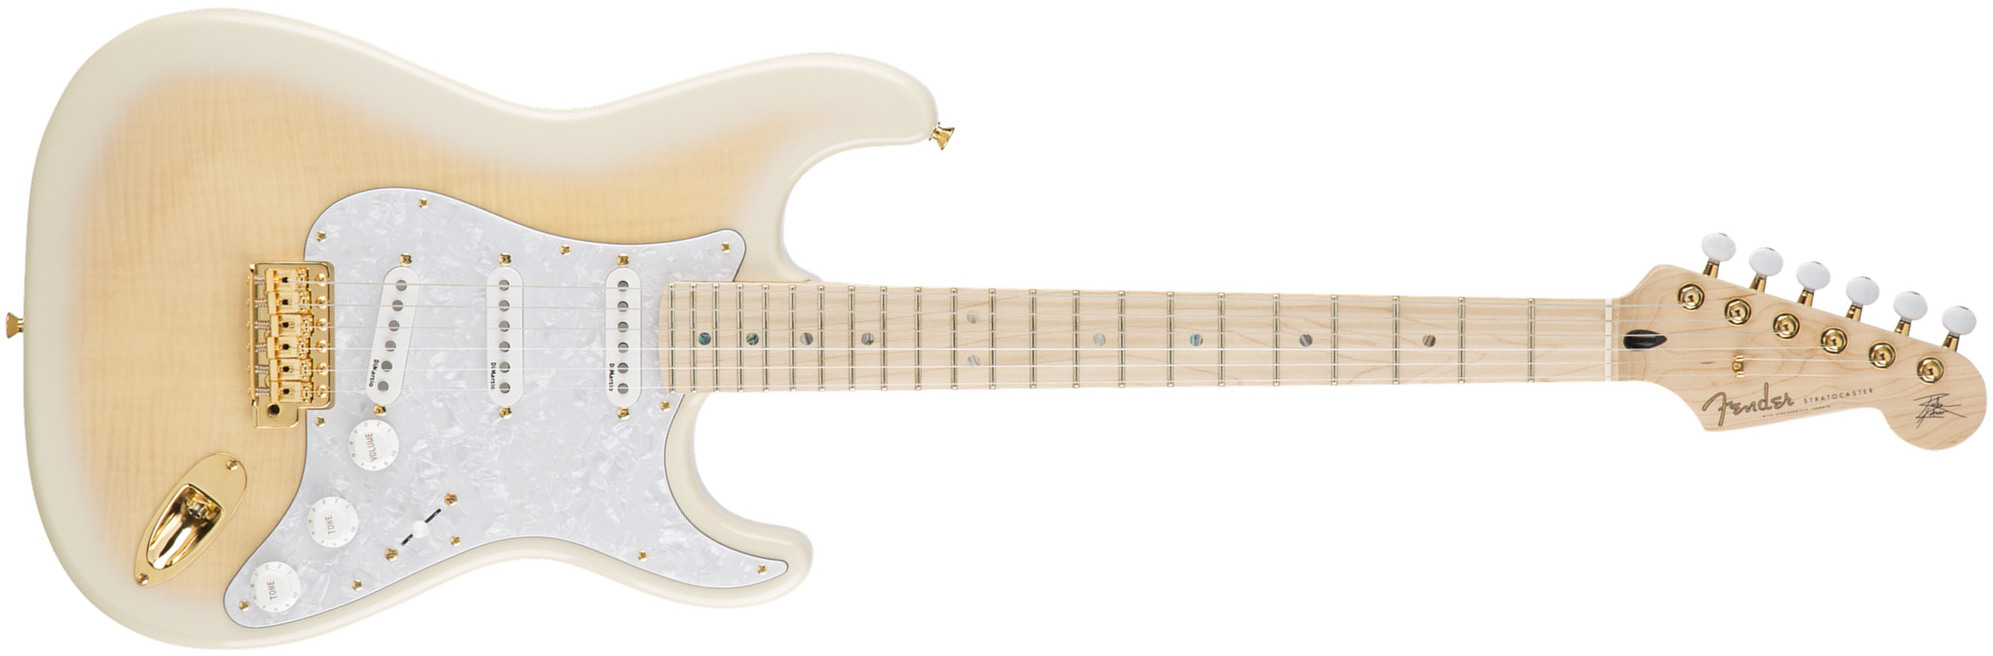 Fender Richie Kotzen Strat Jap Signature 3s Dimarzio Trem Mn - Transparent White Burst - Str shape electric guitar - Main picture